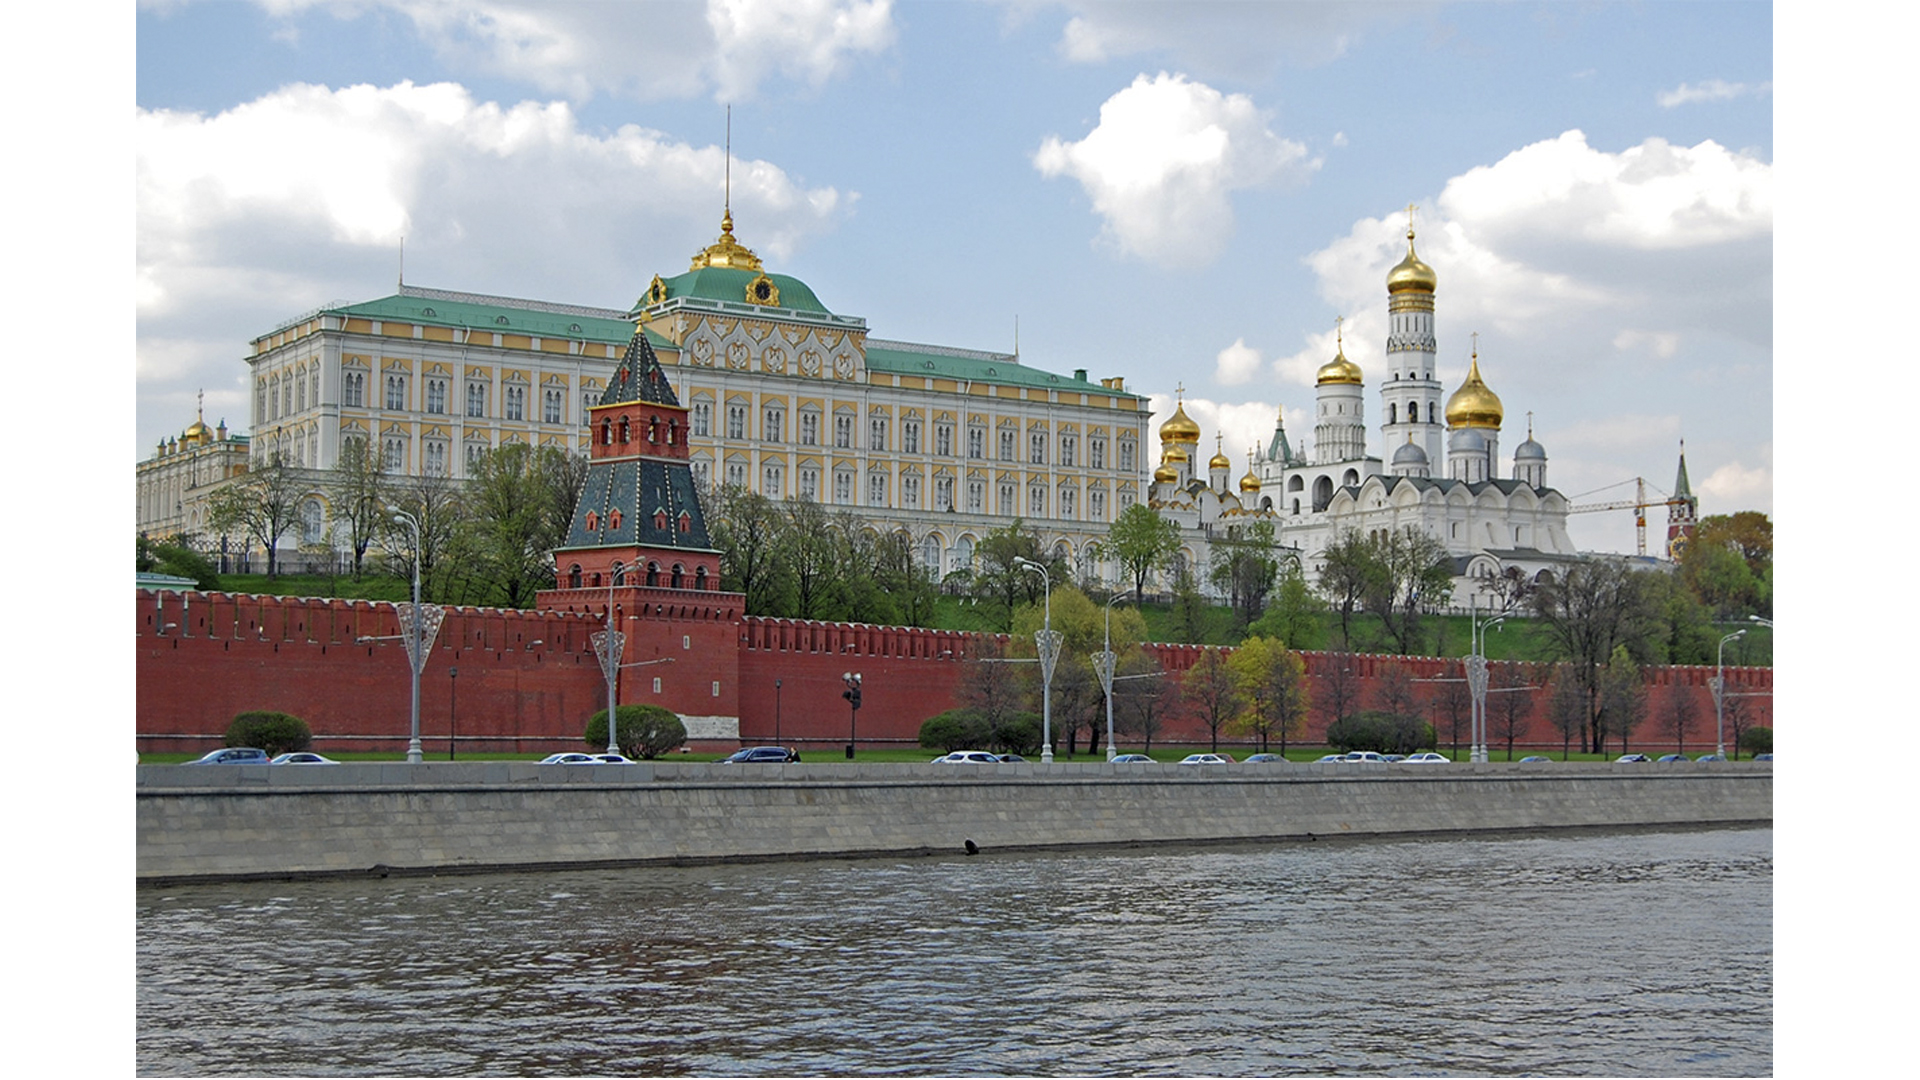 Как выглядит большой кремлевский дворец. Большой Кремлевский дворец. Большой Кремлёвский дворец в Москве. Московский Кремль большой Кремлевский дворецдворец. Большой Кремлёвский дворец в Москве резиденция президента.